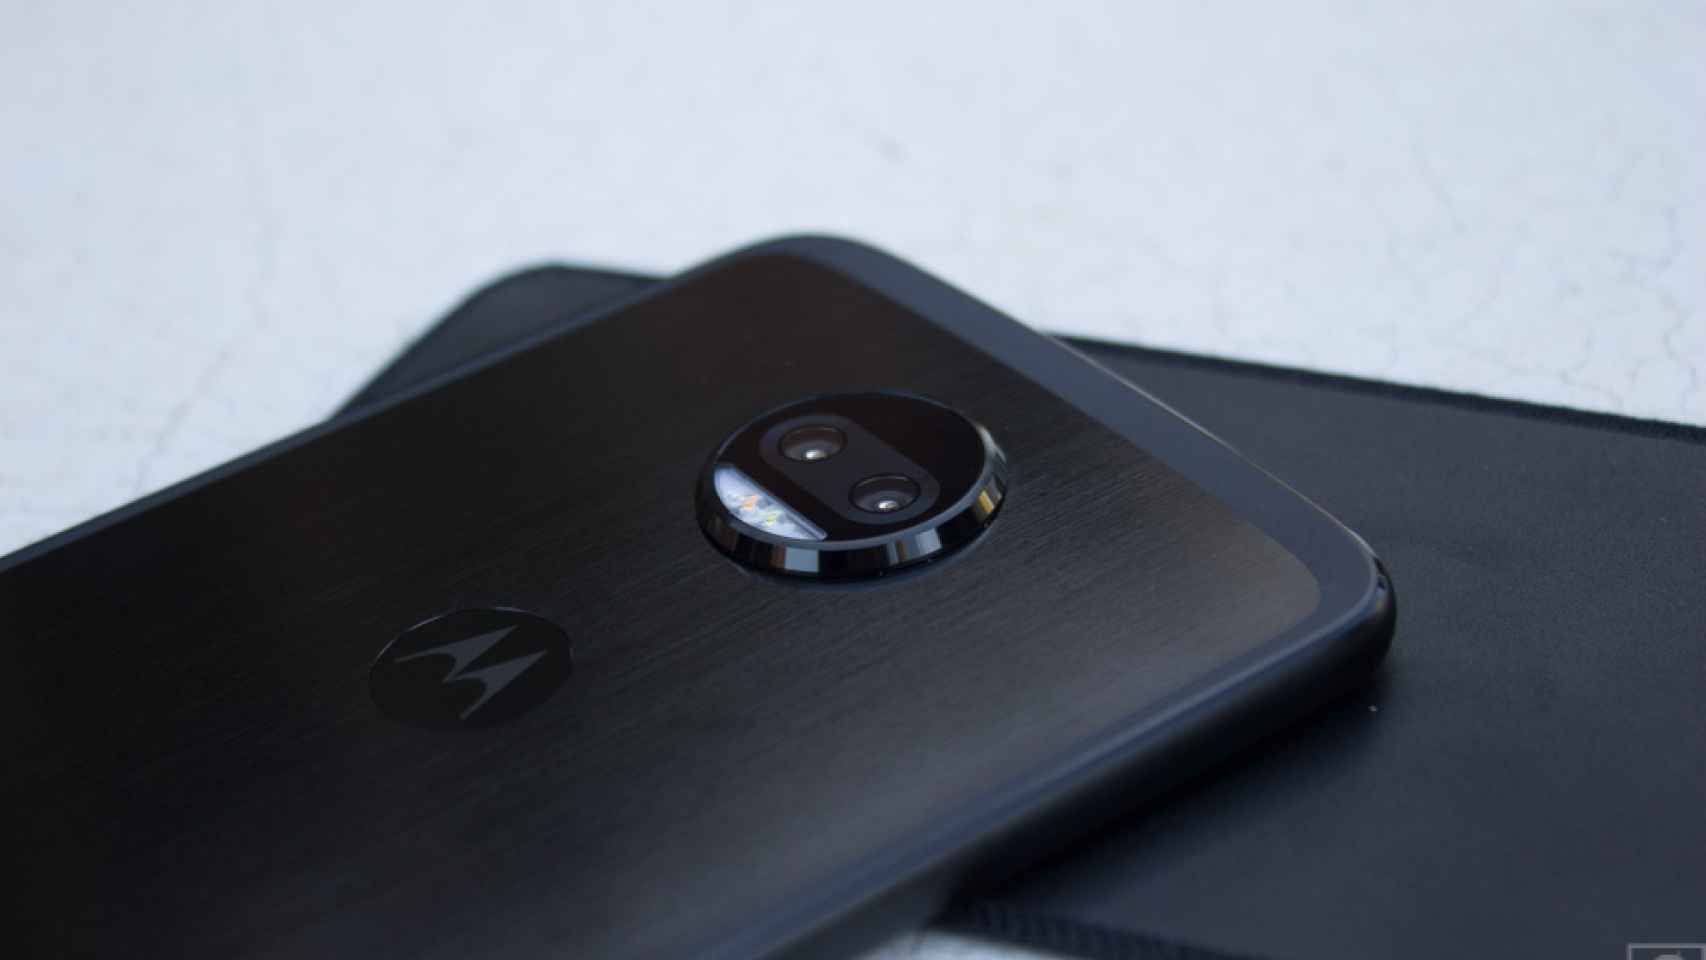 El Moto Z3 Play se filtra con su posible diseño y características